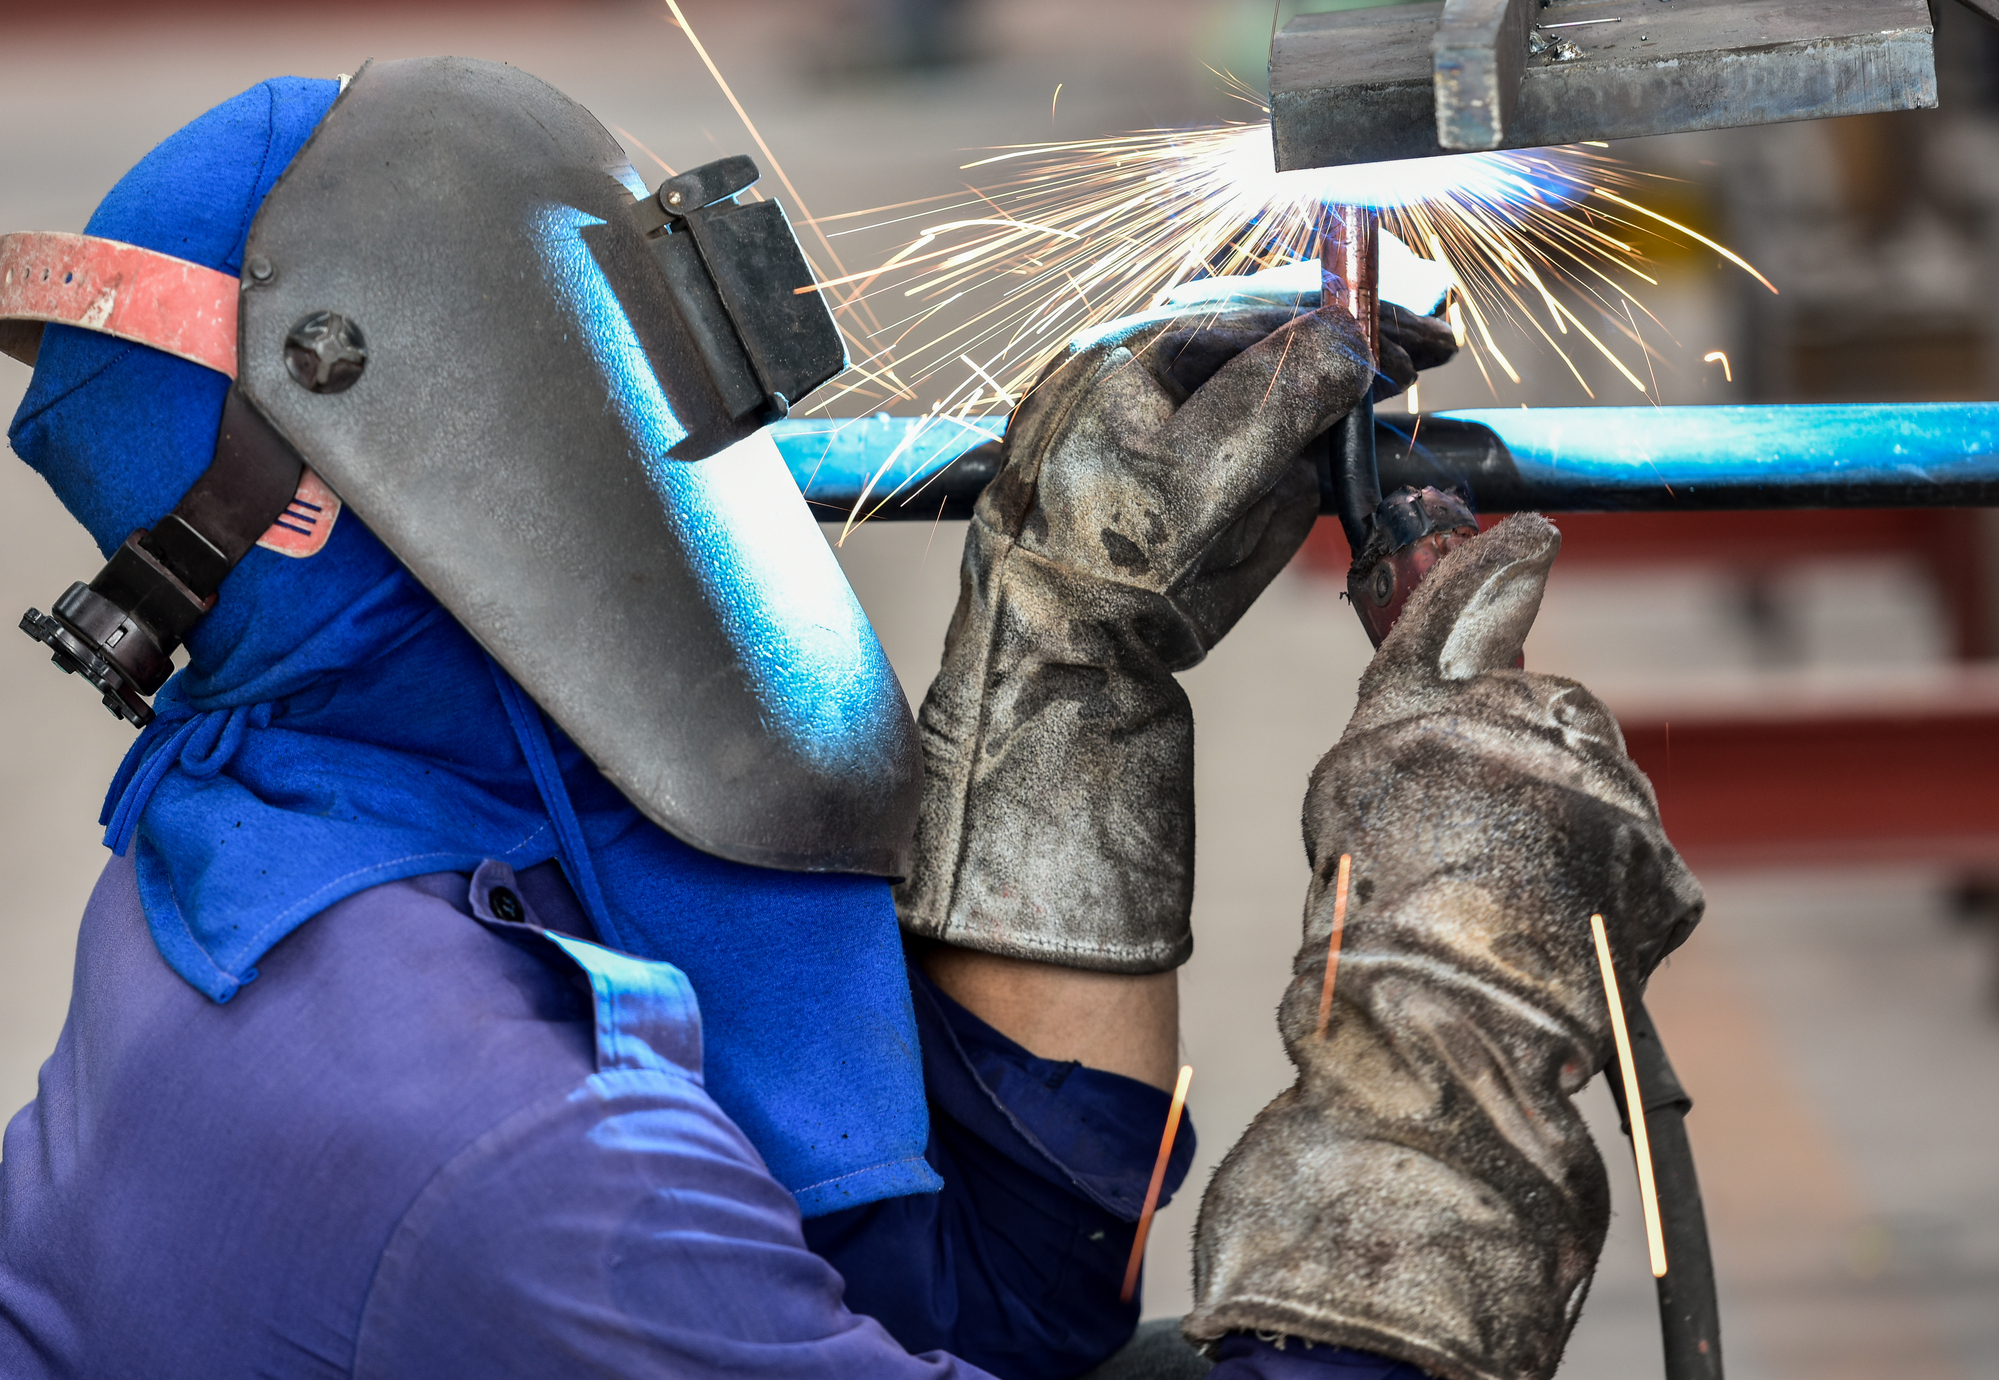 Foto ilustrativa de soldador trabalhando com máscara de proteção